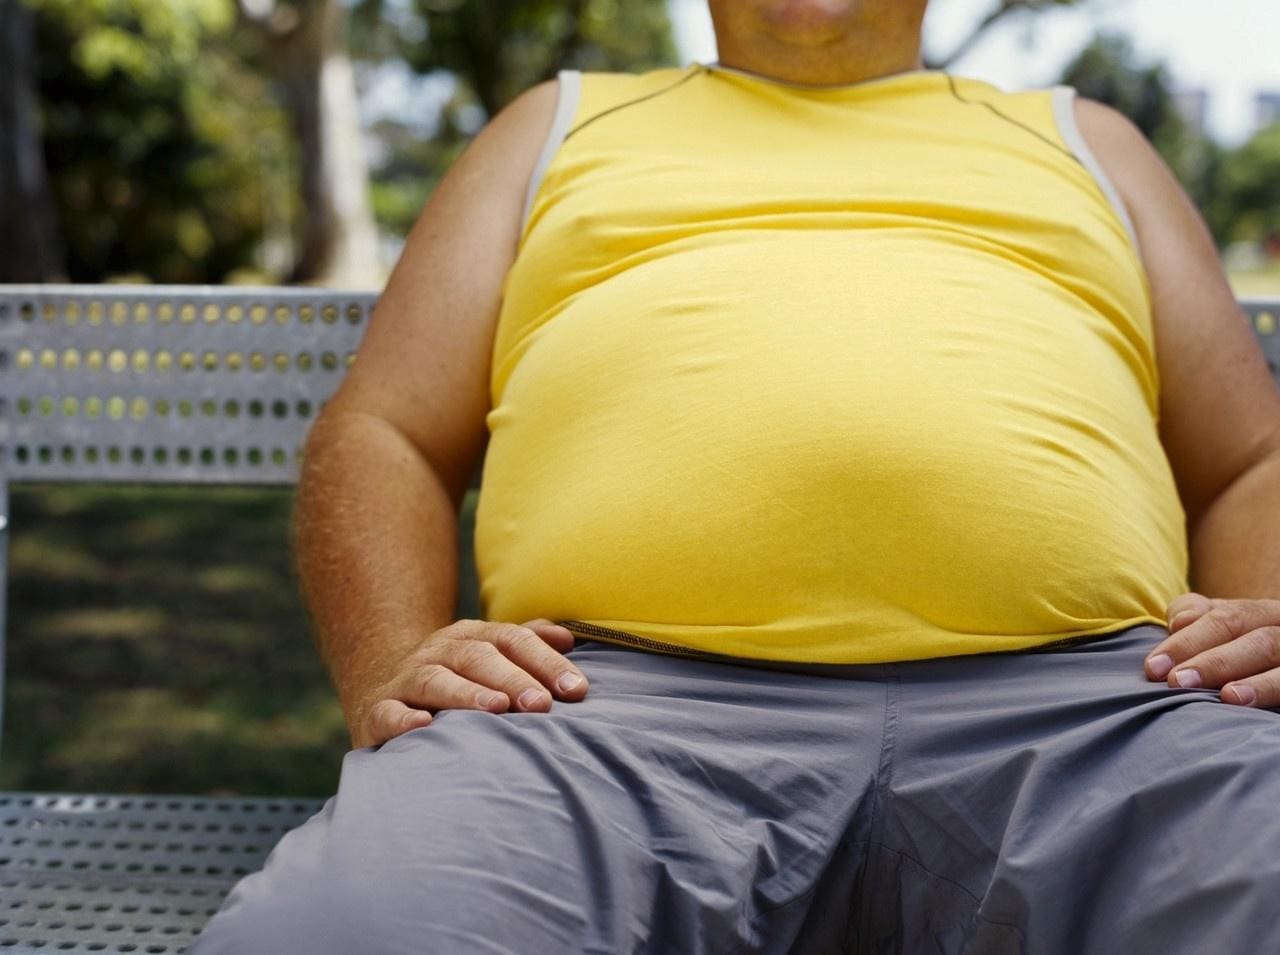 Medicamento pode ser uma nova ferramenta no controle da massa corporal entre pacientes com excesso de peso